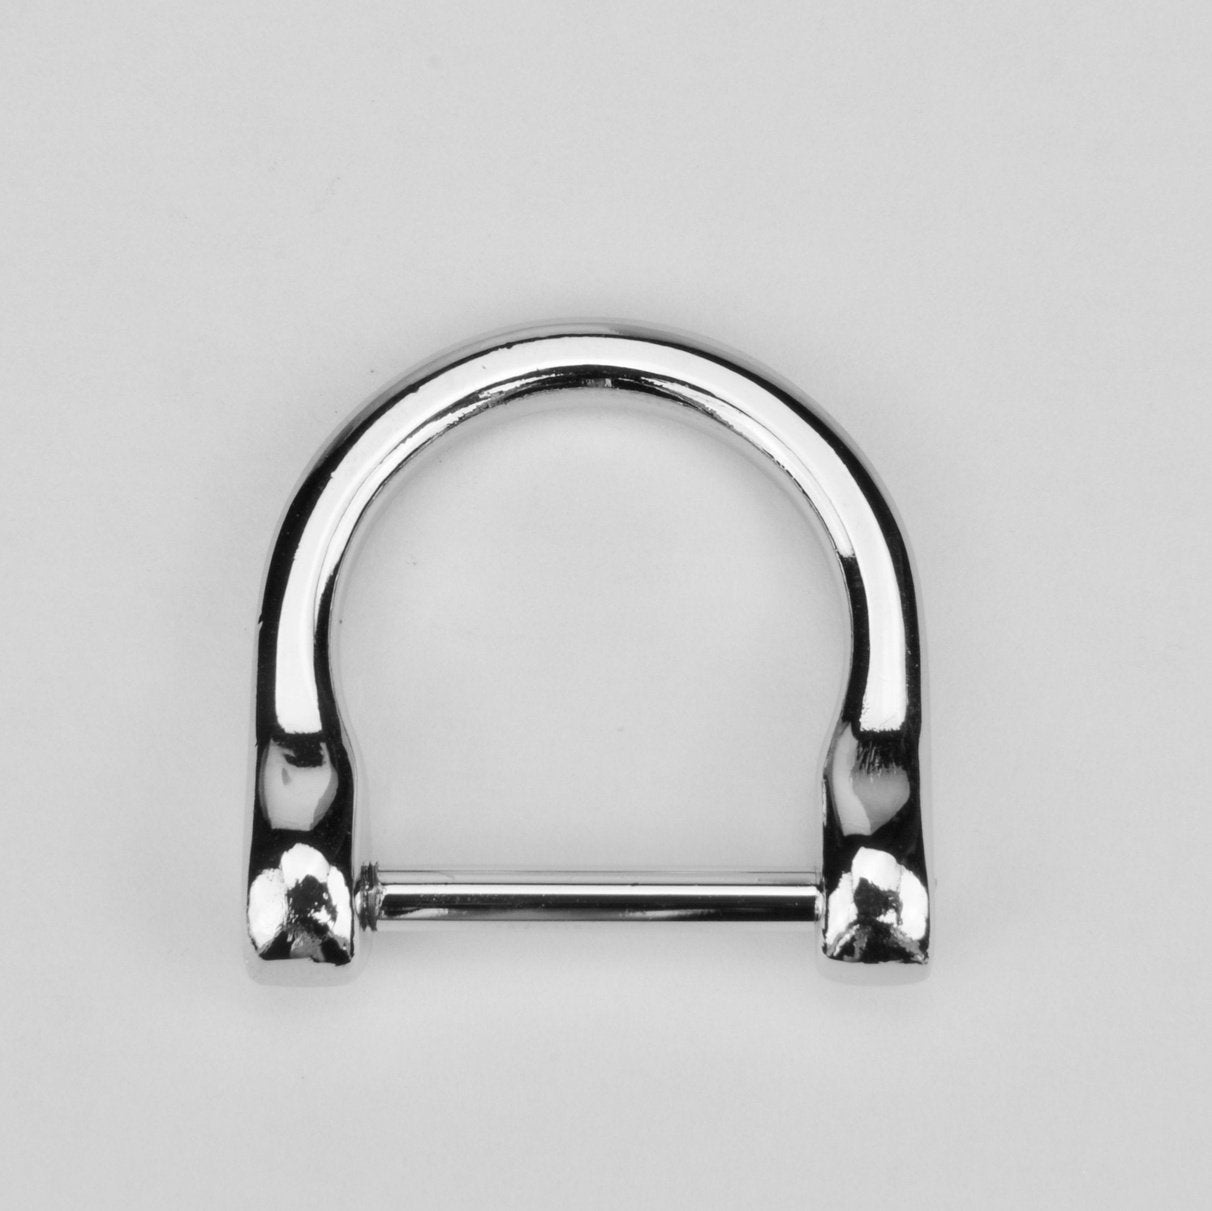 D-Ring Nickel 20 mm